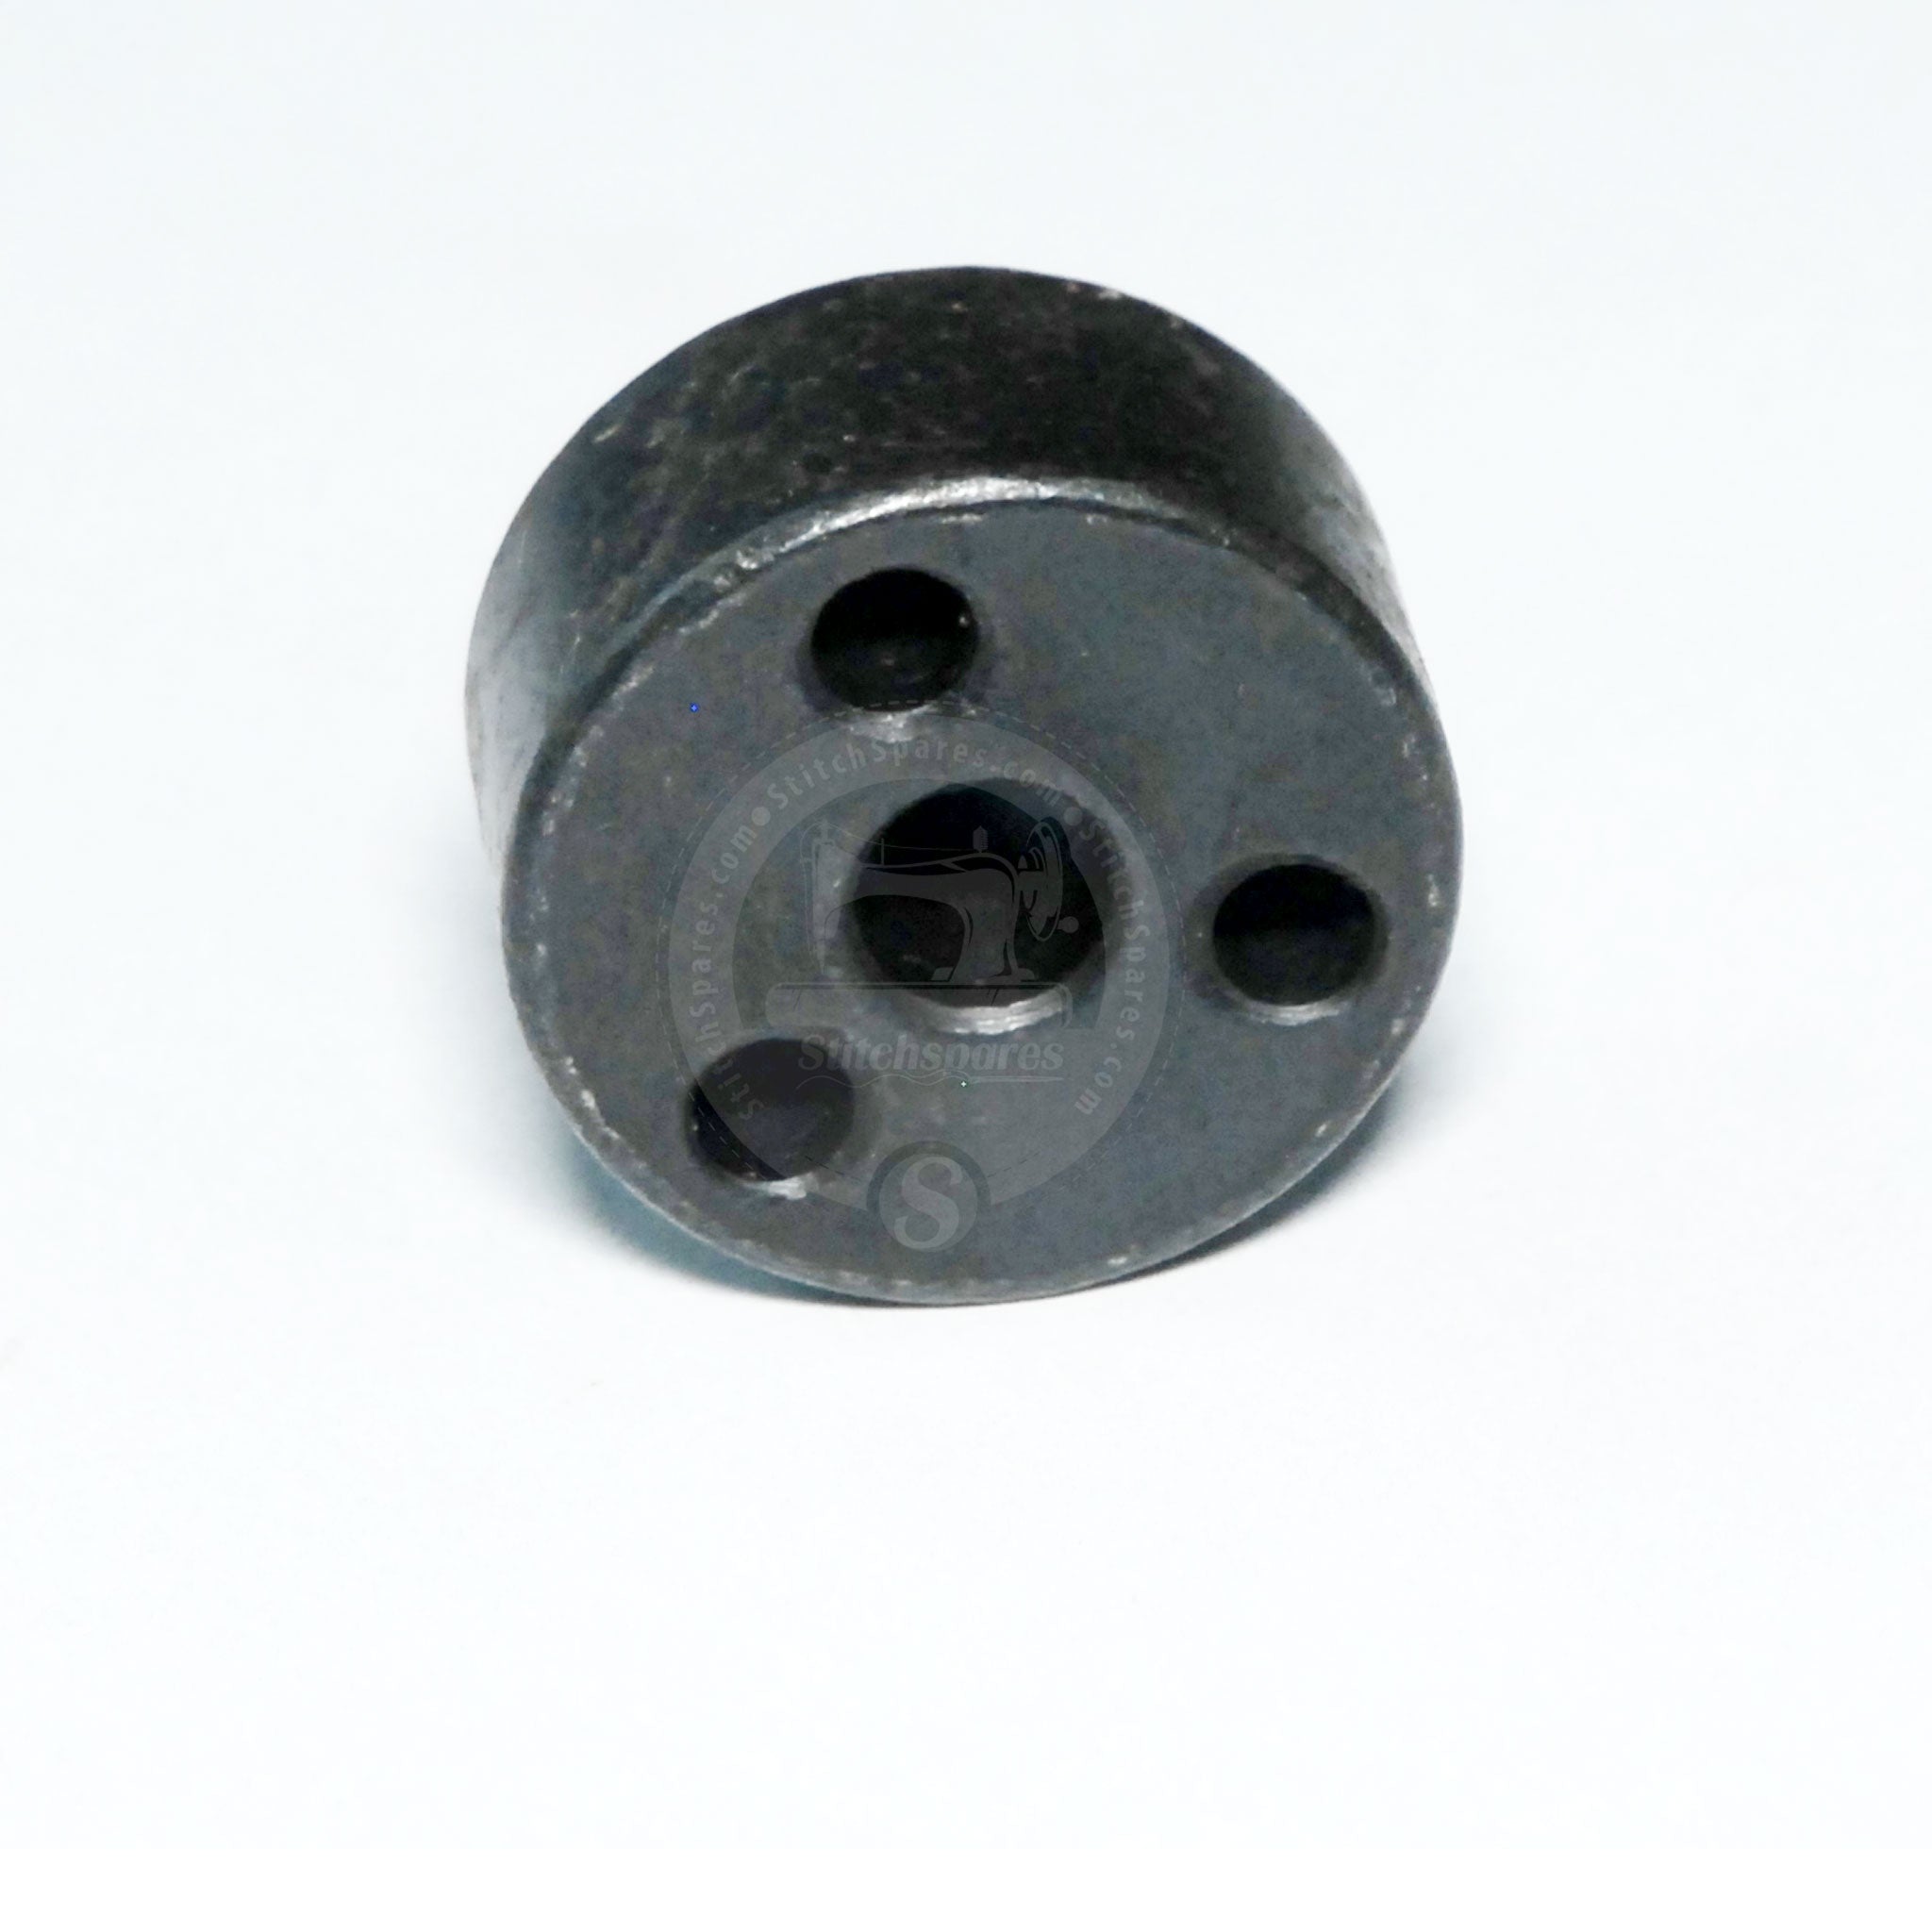 B1152-781-000 Máquina perforadora de botones Juki con base de pasador.